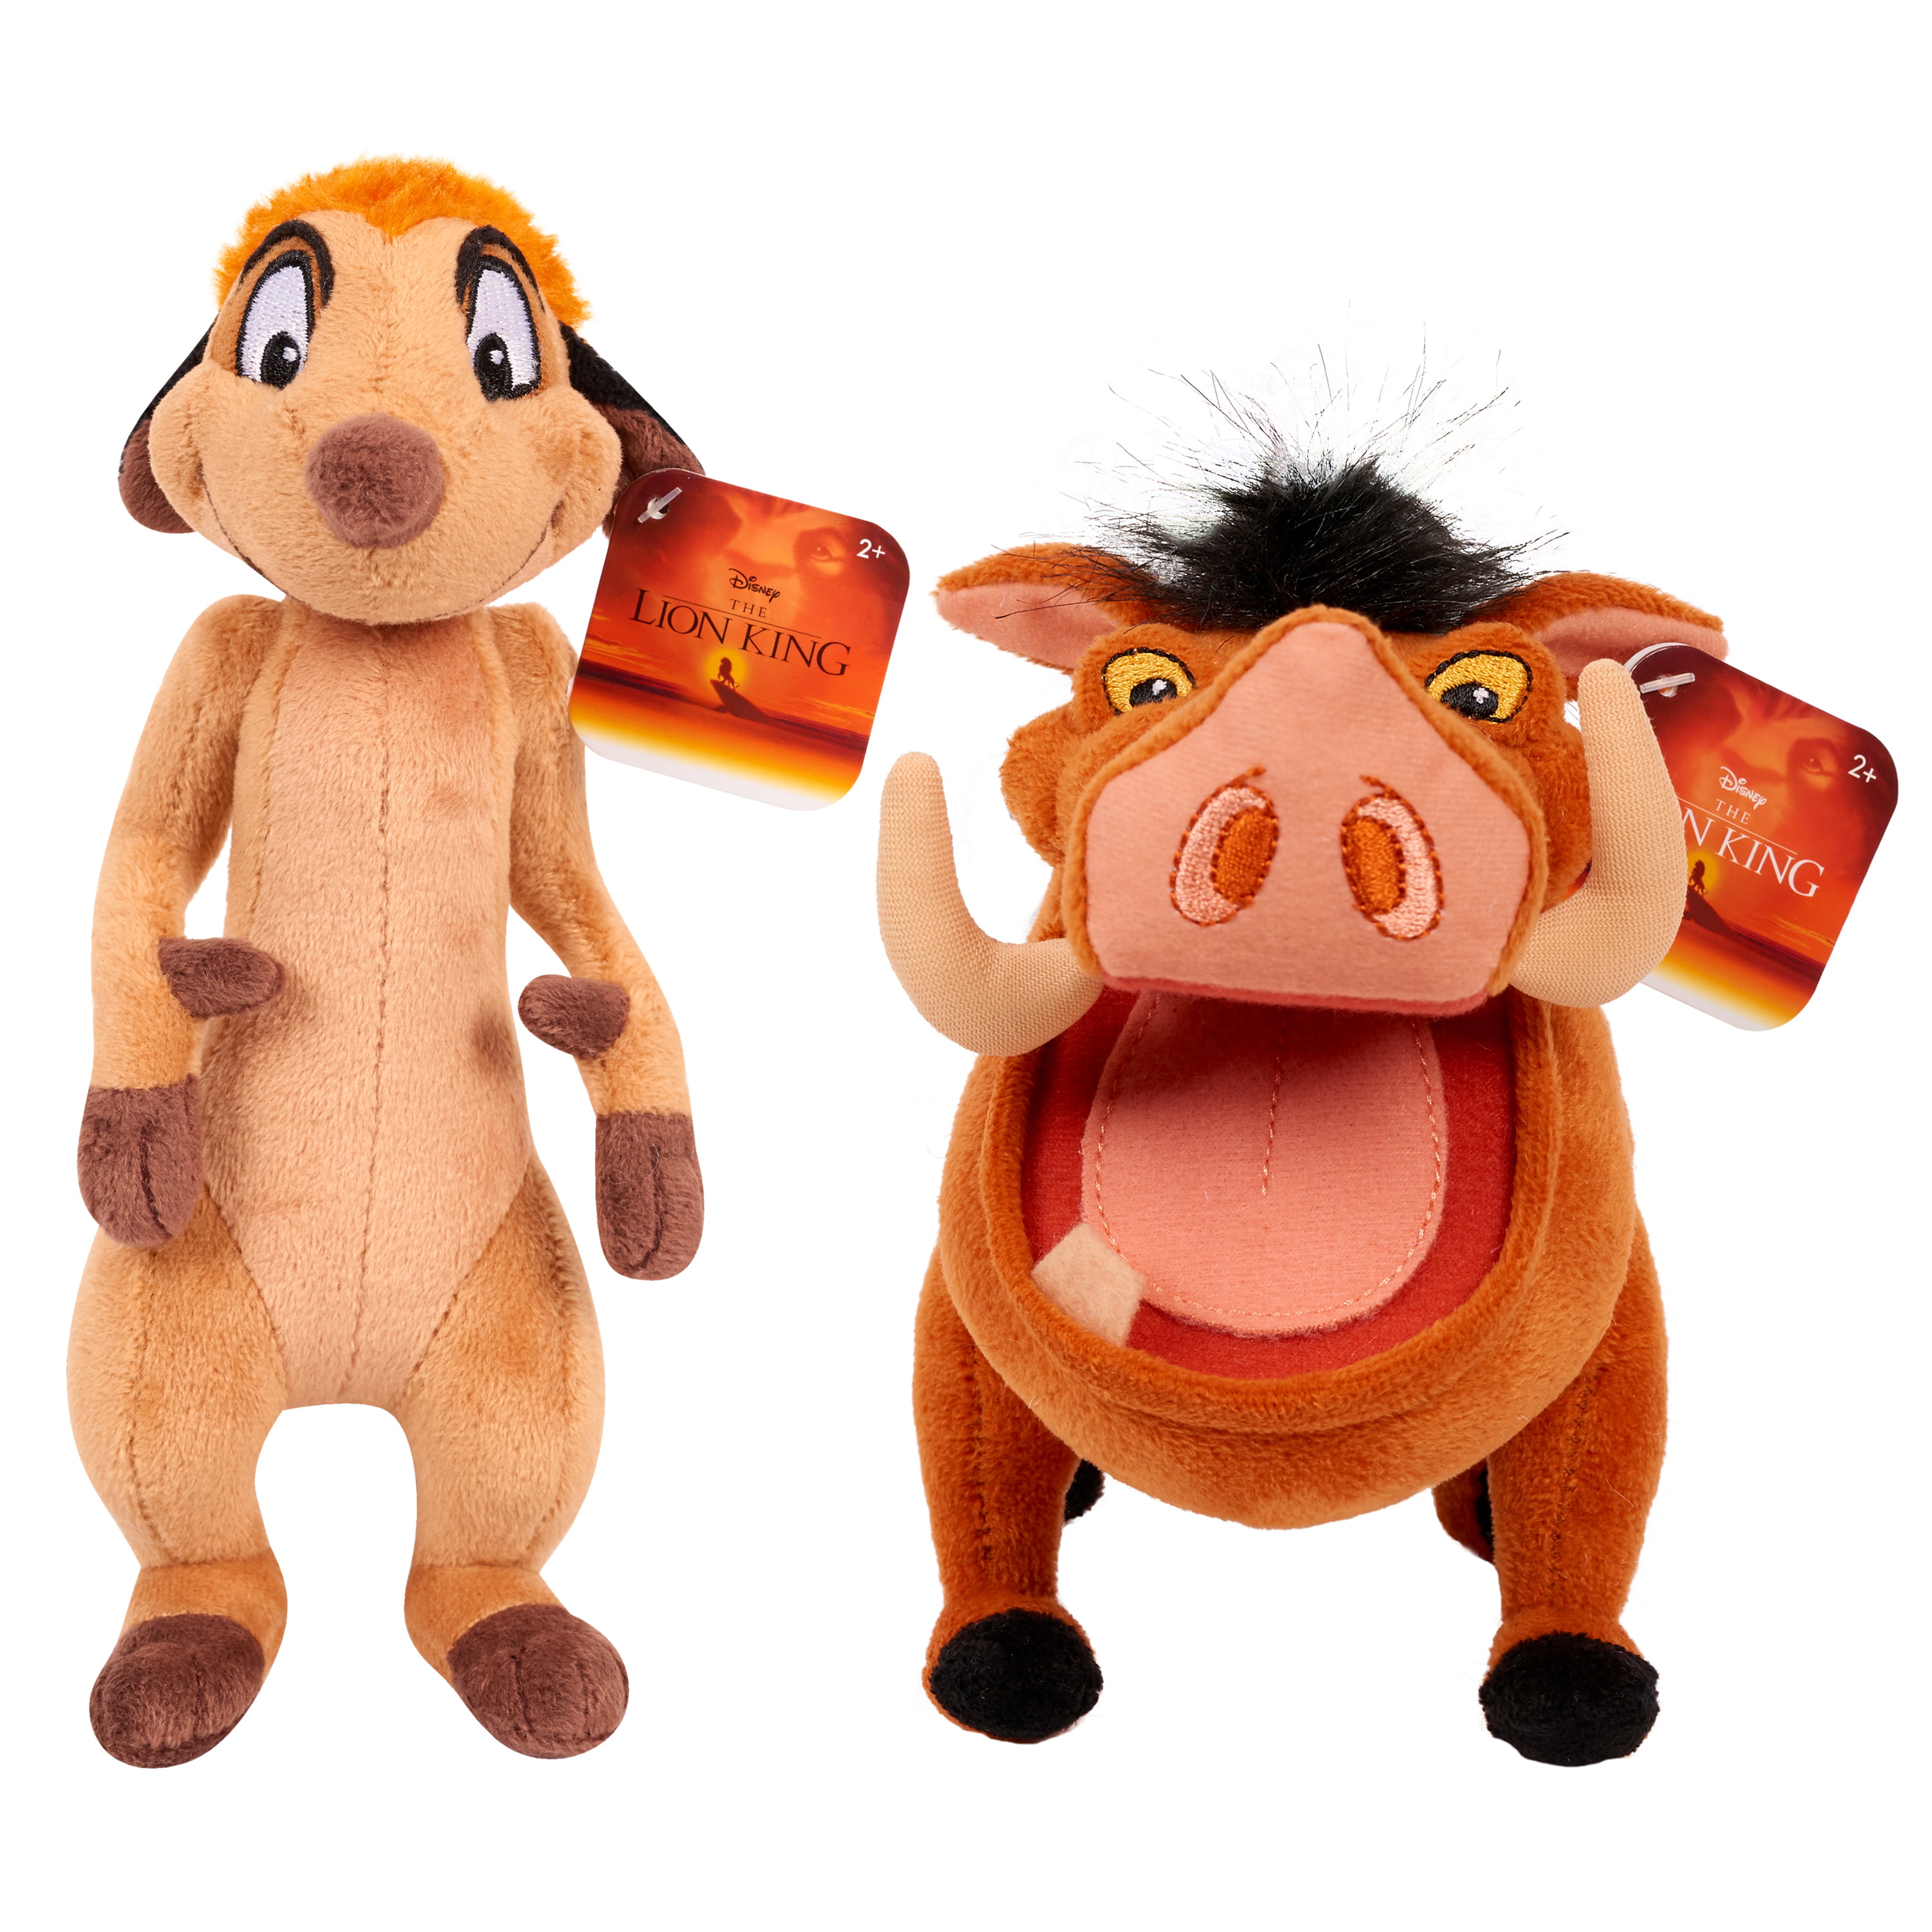 Lion King Plush Timon & Pumbaa - 2 pack bundle 